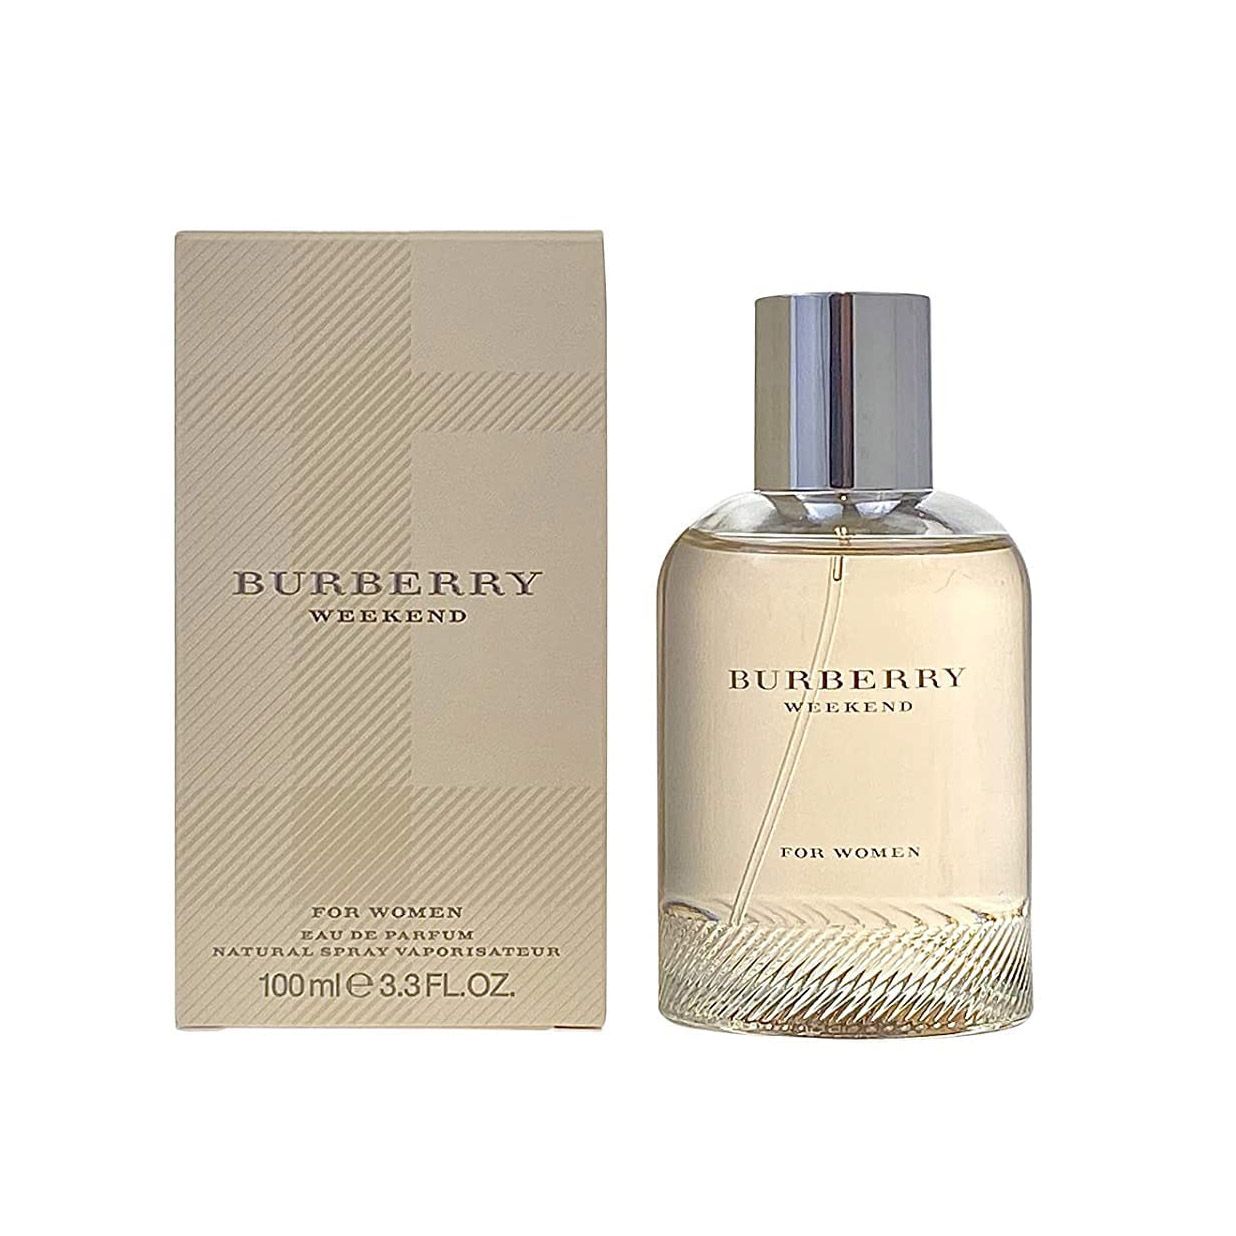 Burberry Weekend For Women Eau De Parfum 100ml at Ratans Online Shop - Perfumes Wholesale and Retailer Fragrance